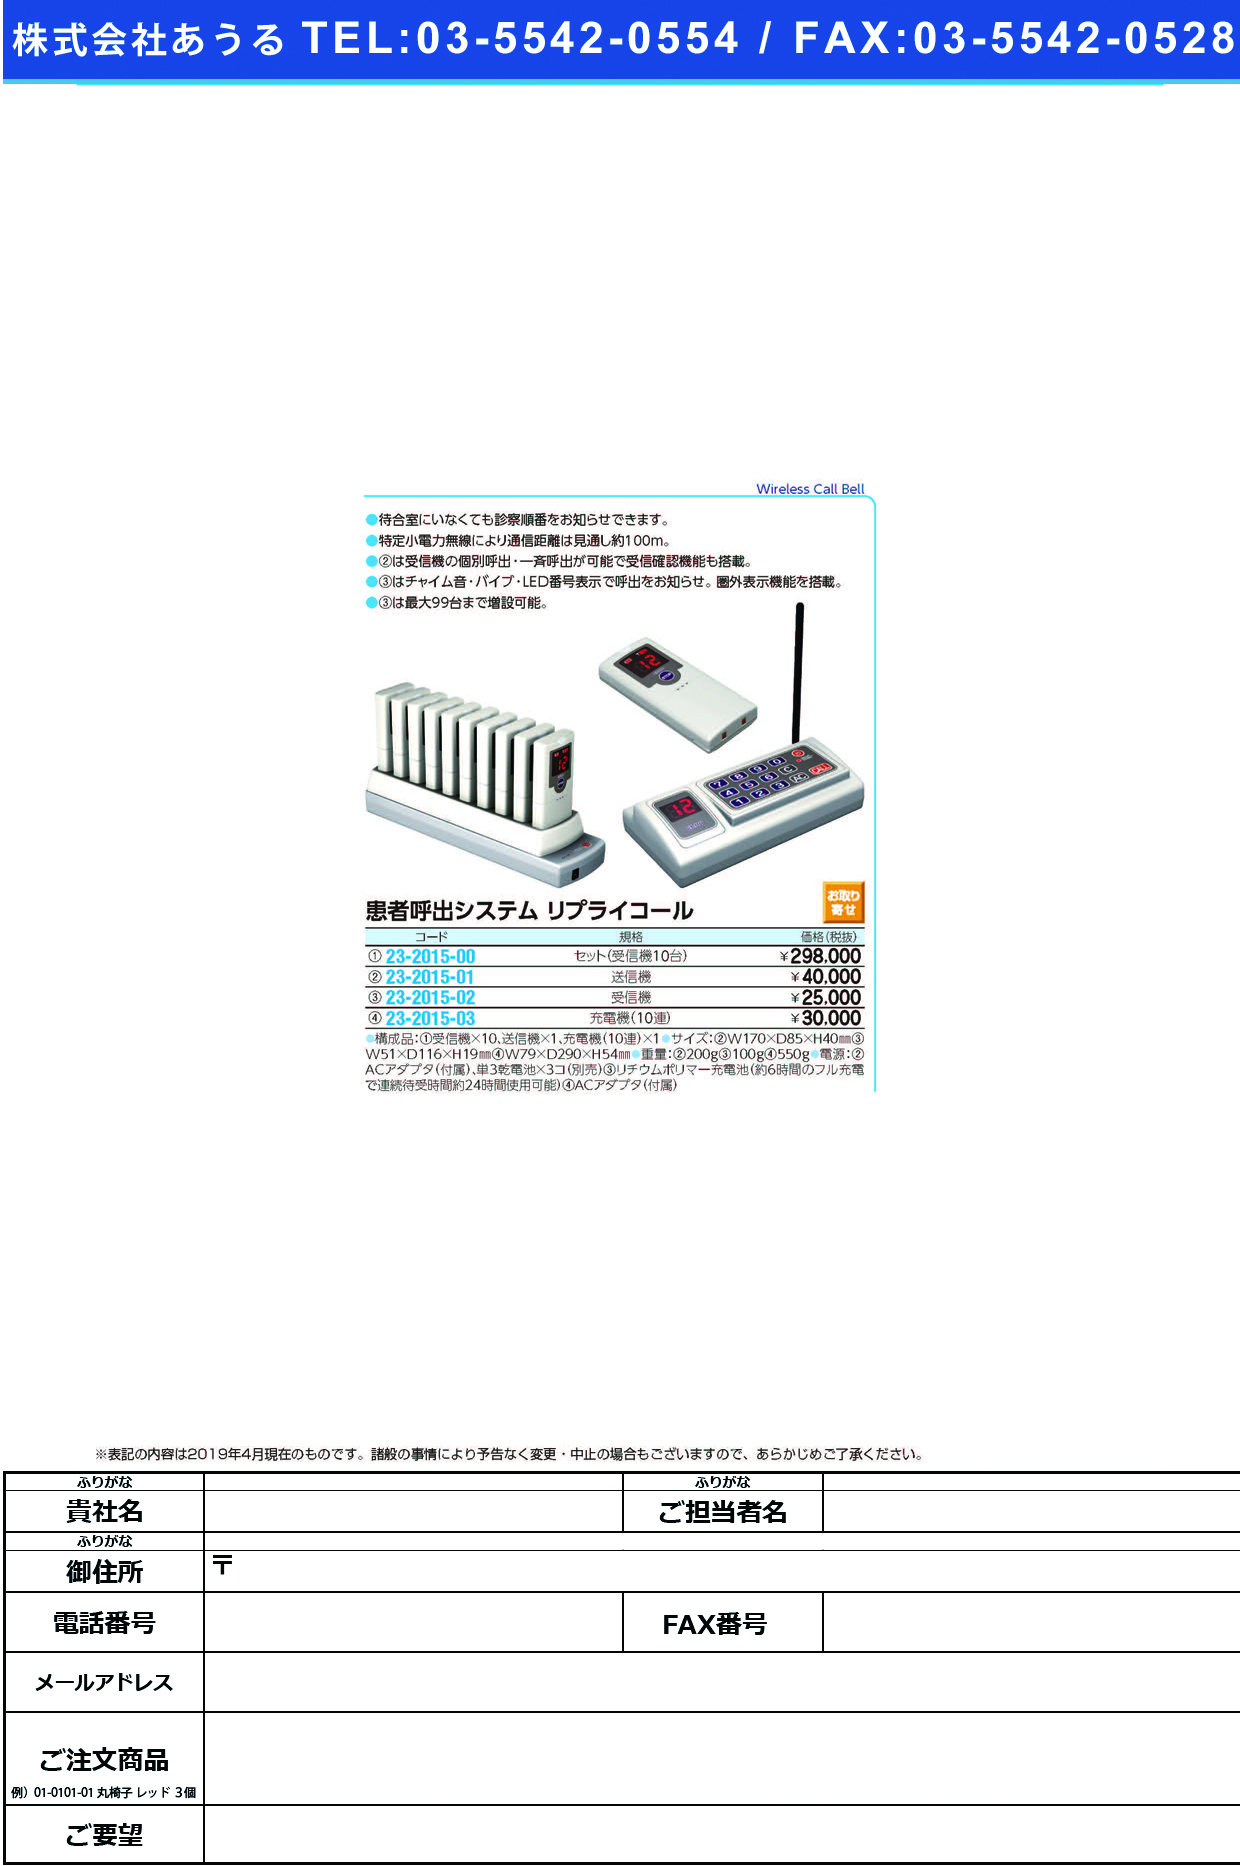 (23-2015-01)呼出システムリプライコール送信機 RE-100 ﾘﾌﾟﾗｲｺｰﾙﾖｳｿｳｼﾝｷ【1台単位】【2019年カタログ商品】